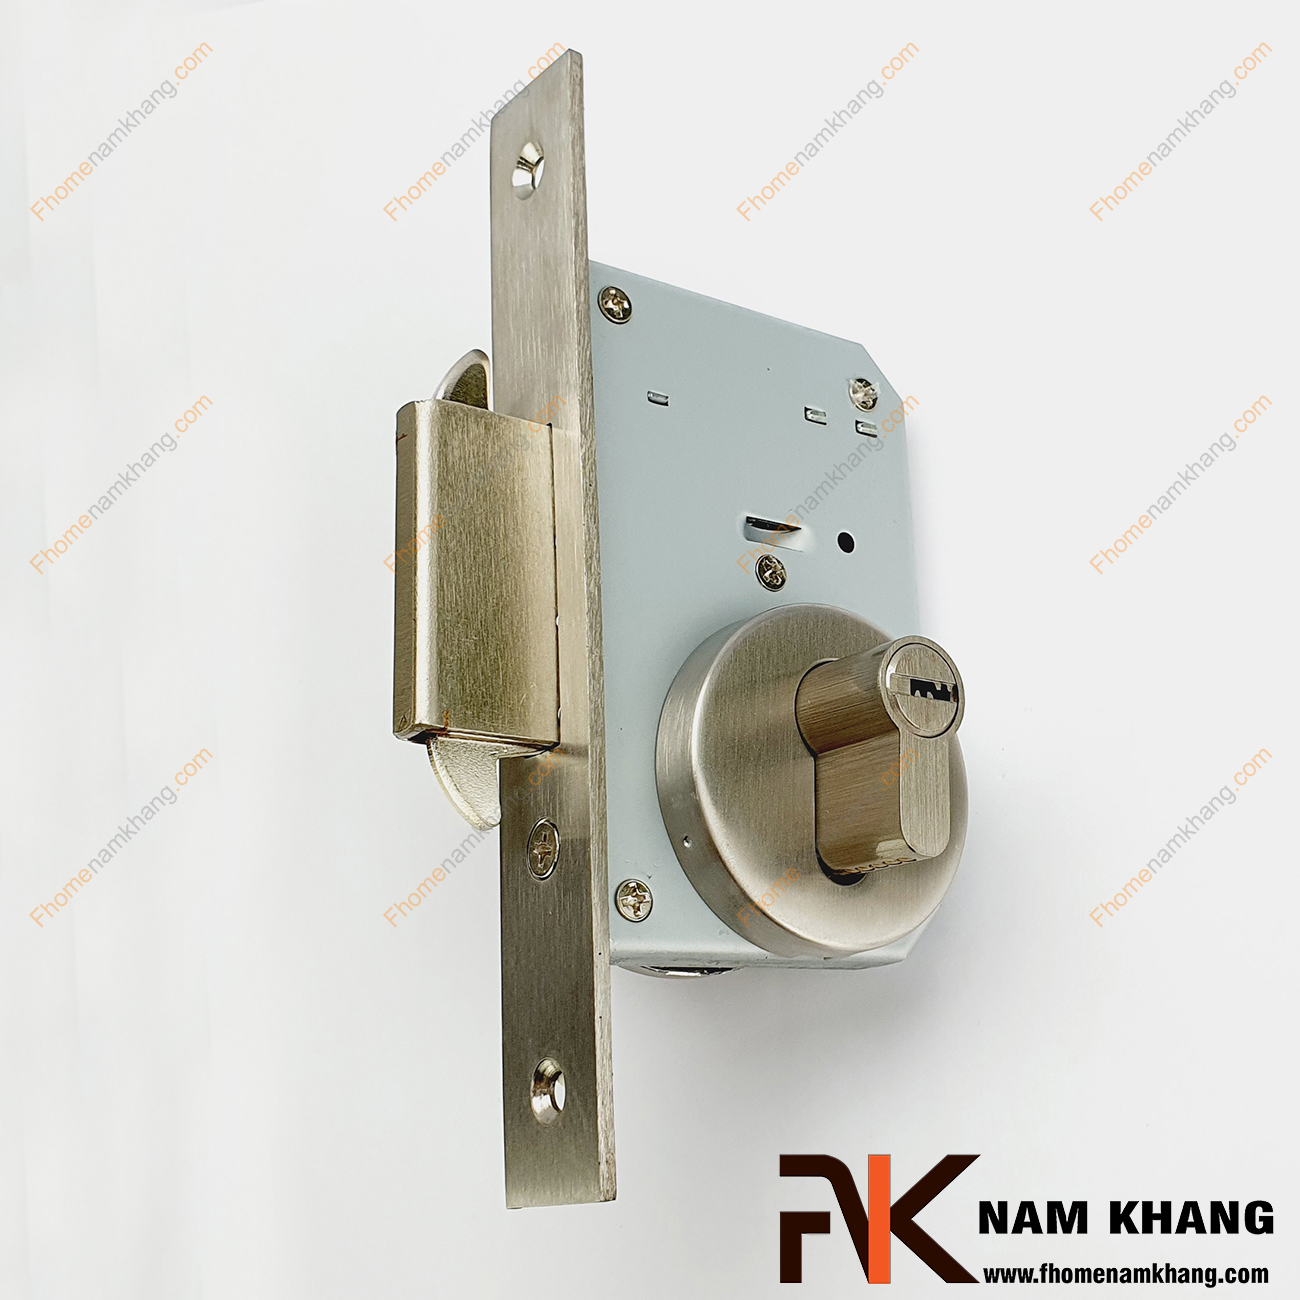 Khóa âm cửa lùa bằng inox cao cấp NK556-INOX là dòng khóa thông dụng và được ưa chuộng sử dụng tại thị trường Việt Nam.